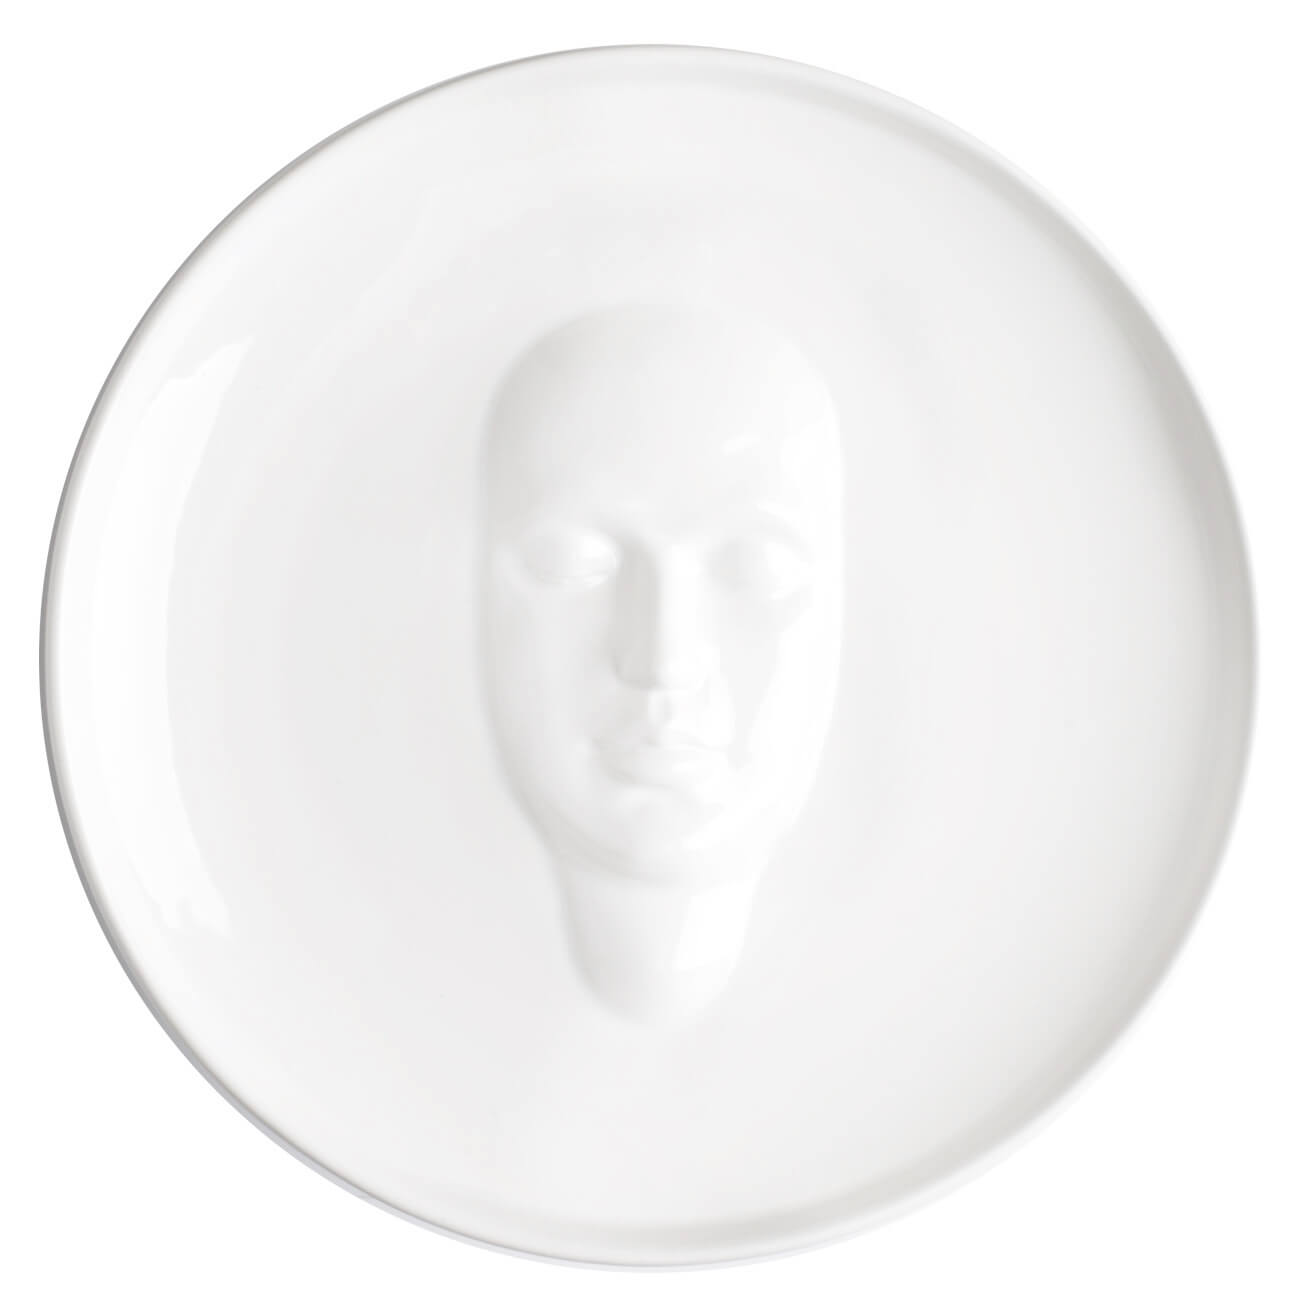 Блюдо, 24 см, керамика, белое, Лицо, Face блюдо стеклокерамика круглое 17 см белое friends time luminarc p6280